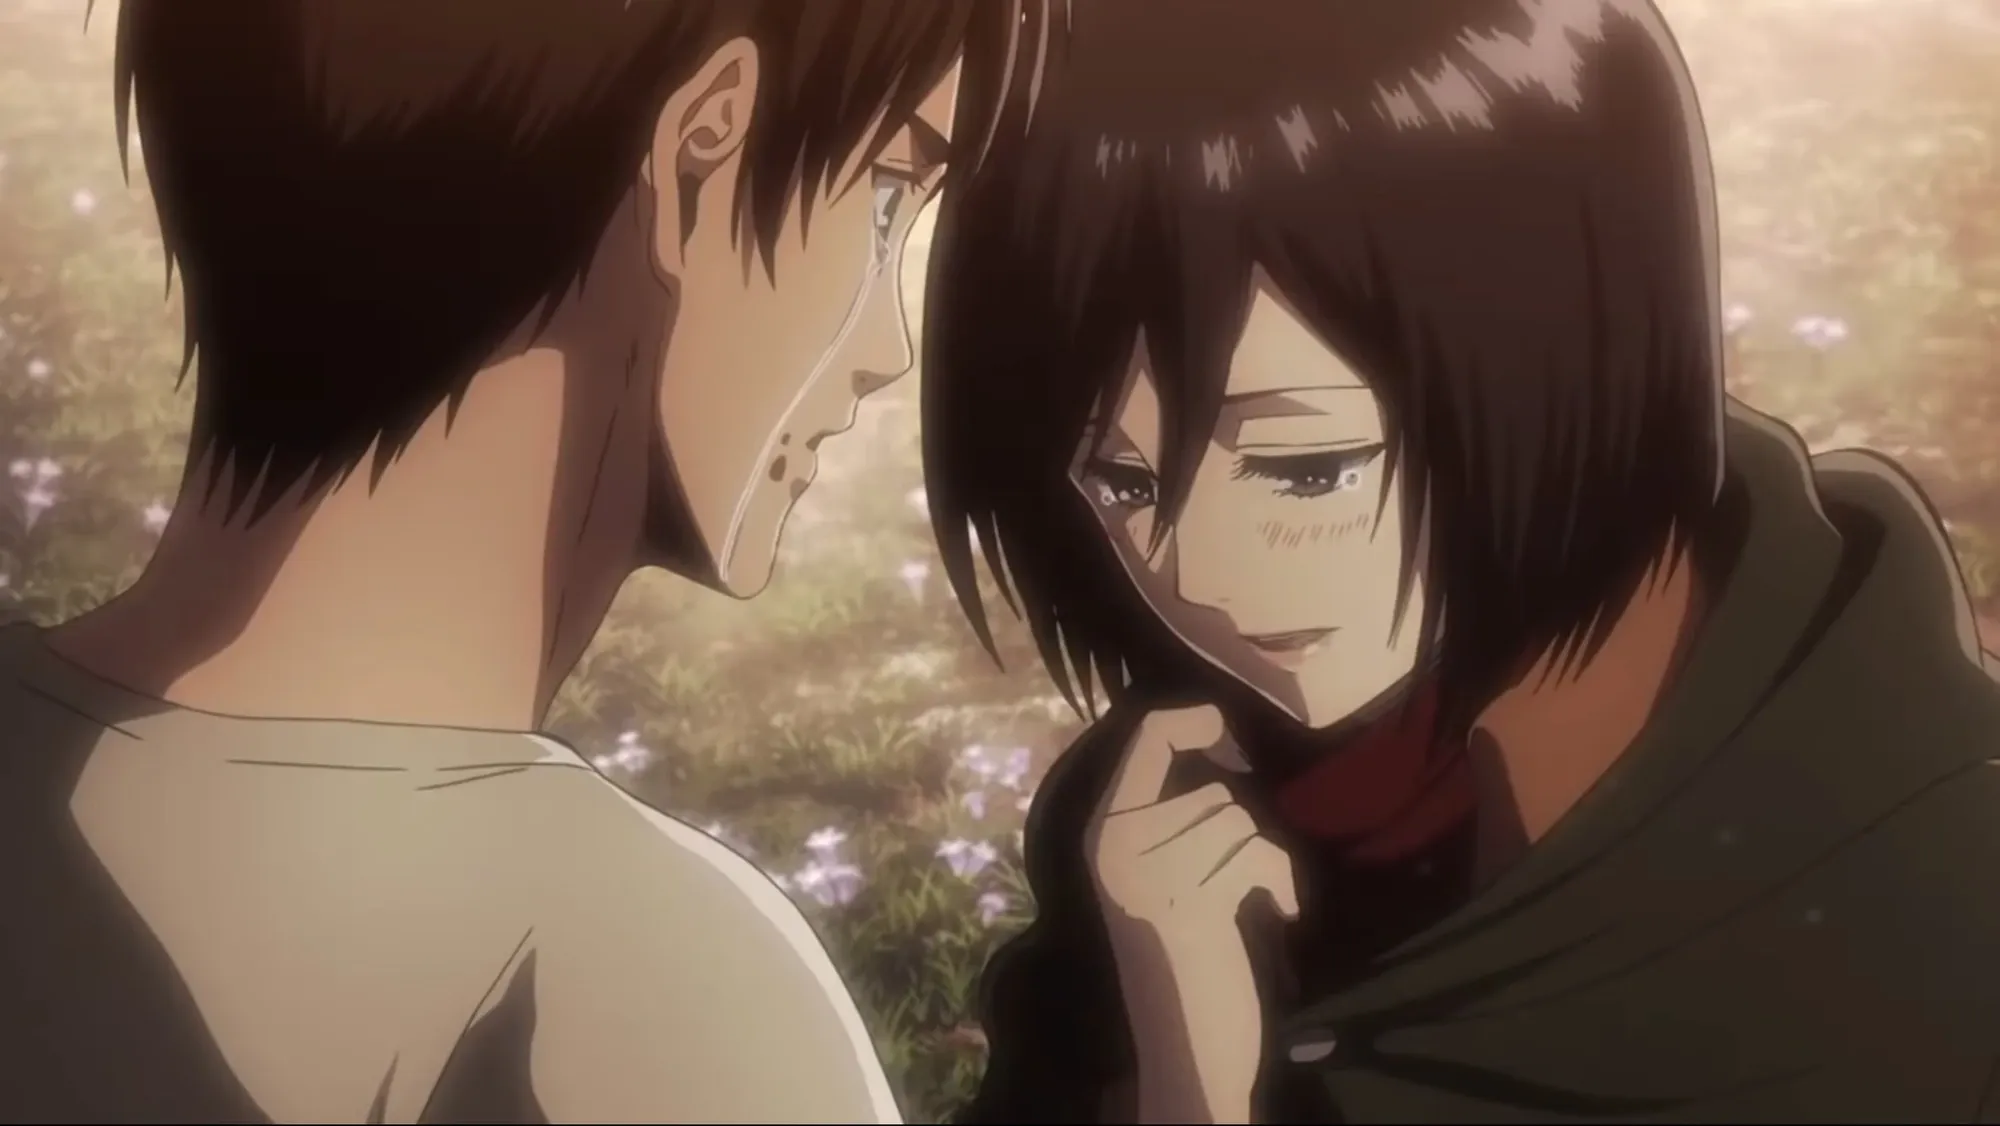 타이탄에 대한 공격 : Eren & Mikasa의 관계와의 거래는 무엇입니까?